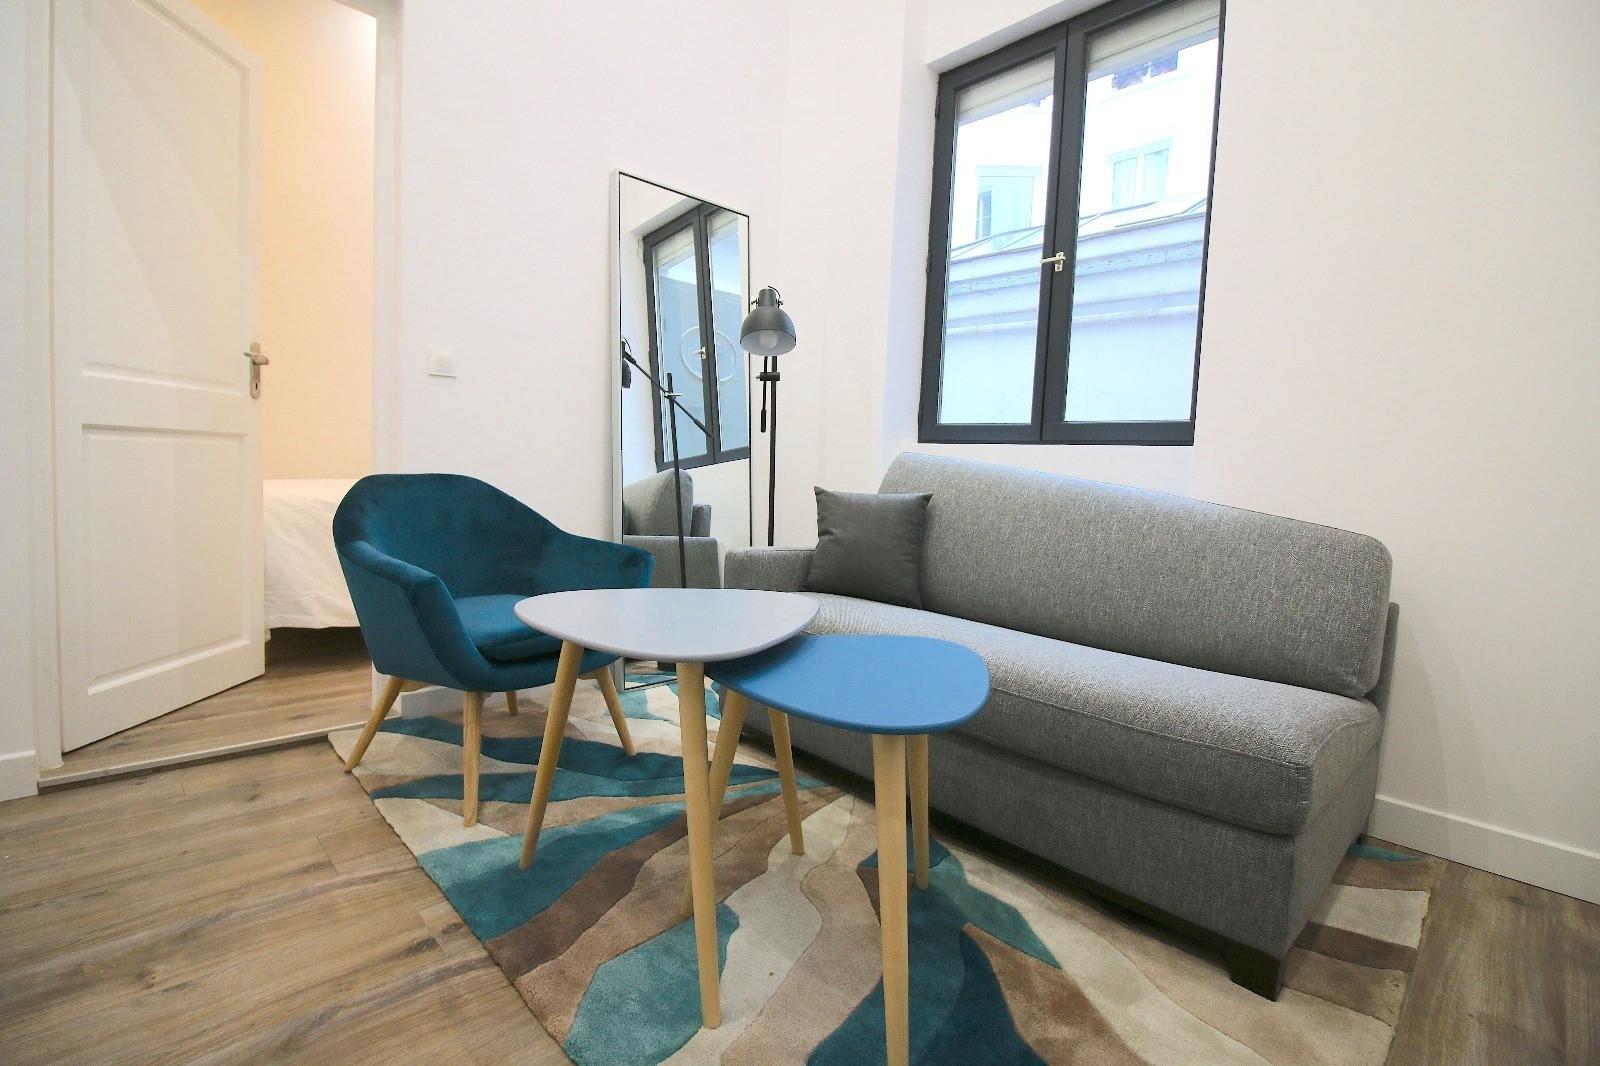 Appartement de 30 m², moderne et équipé, avec coin nuit.…